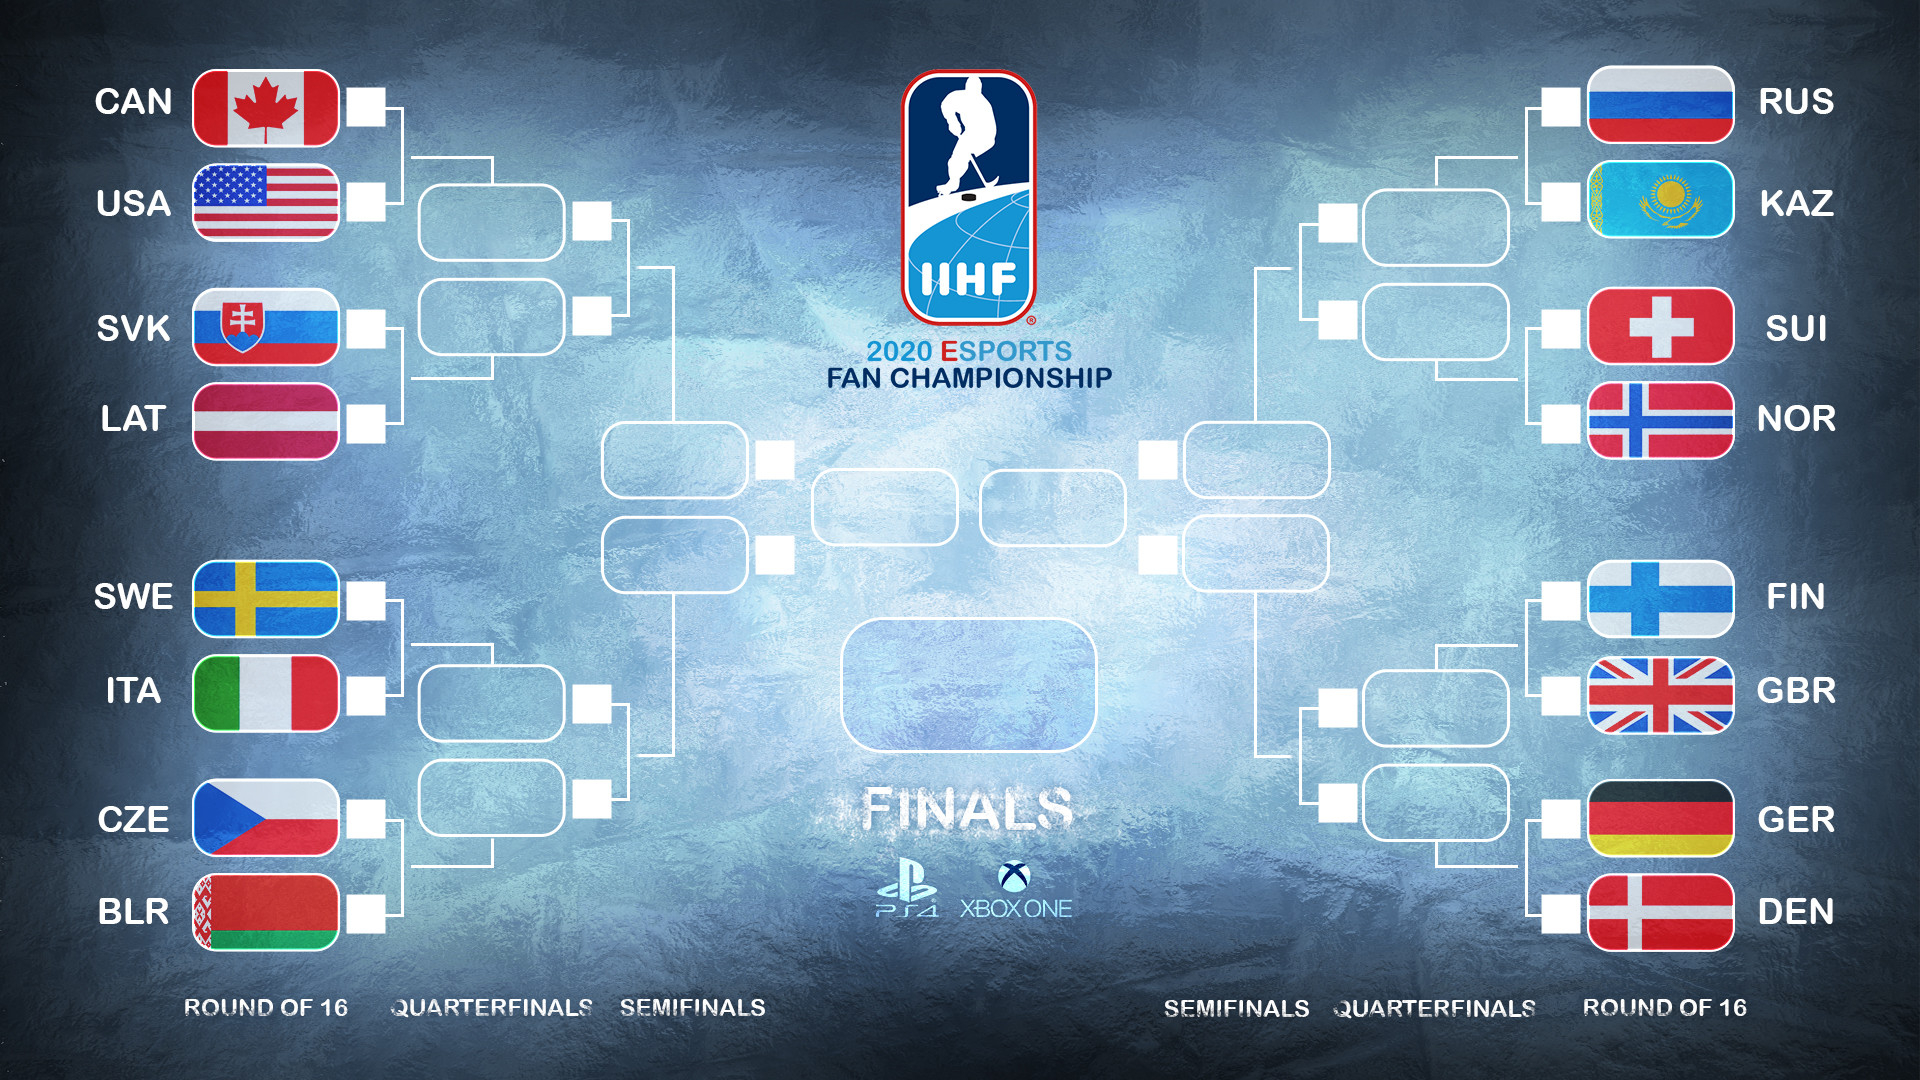 Slutspelsträdet för IIHF 2020 Esports Fan Championship - Bild: IIHF